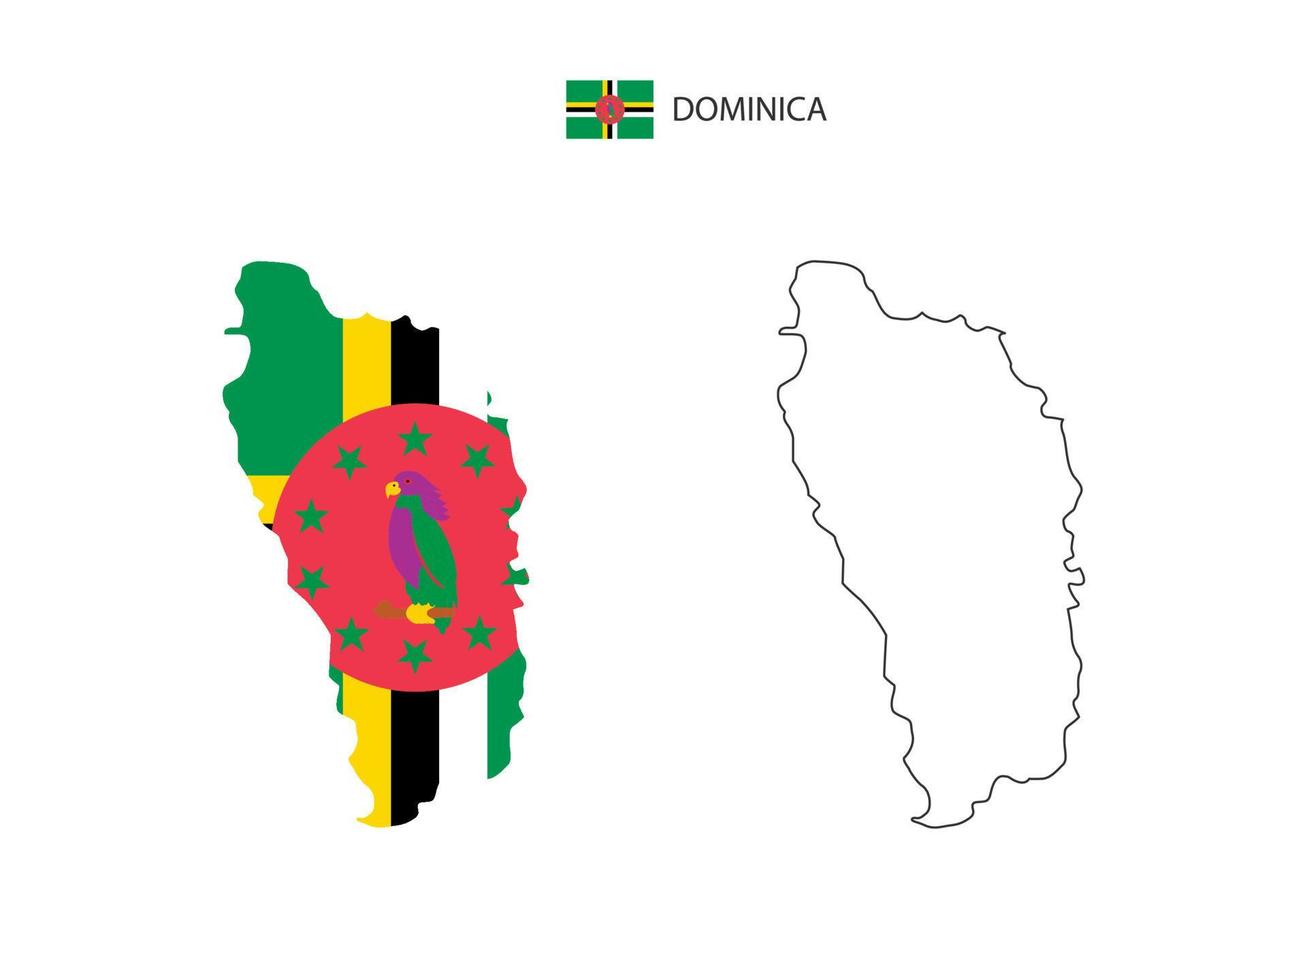 vector de ciudad de mapa de dominica dividido por estilo de simplicidad de contorno. tiene 2 versiones, versión de línea delgada negra y versión de color de bandera de país. ambos mapas estaban en el fondo blanco.